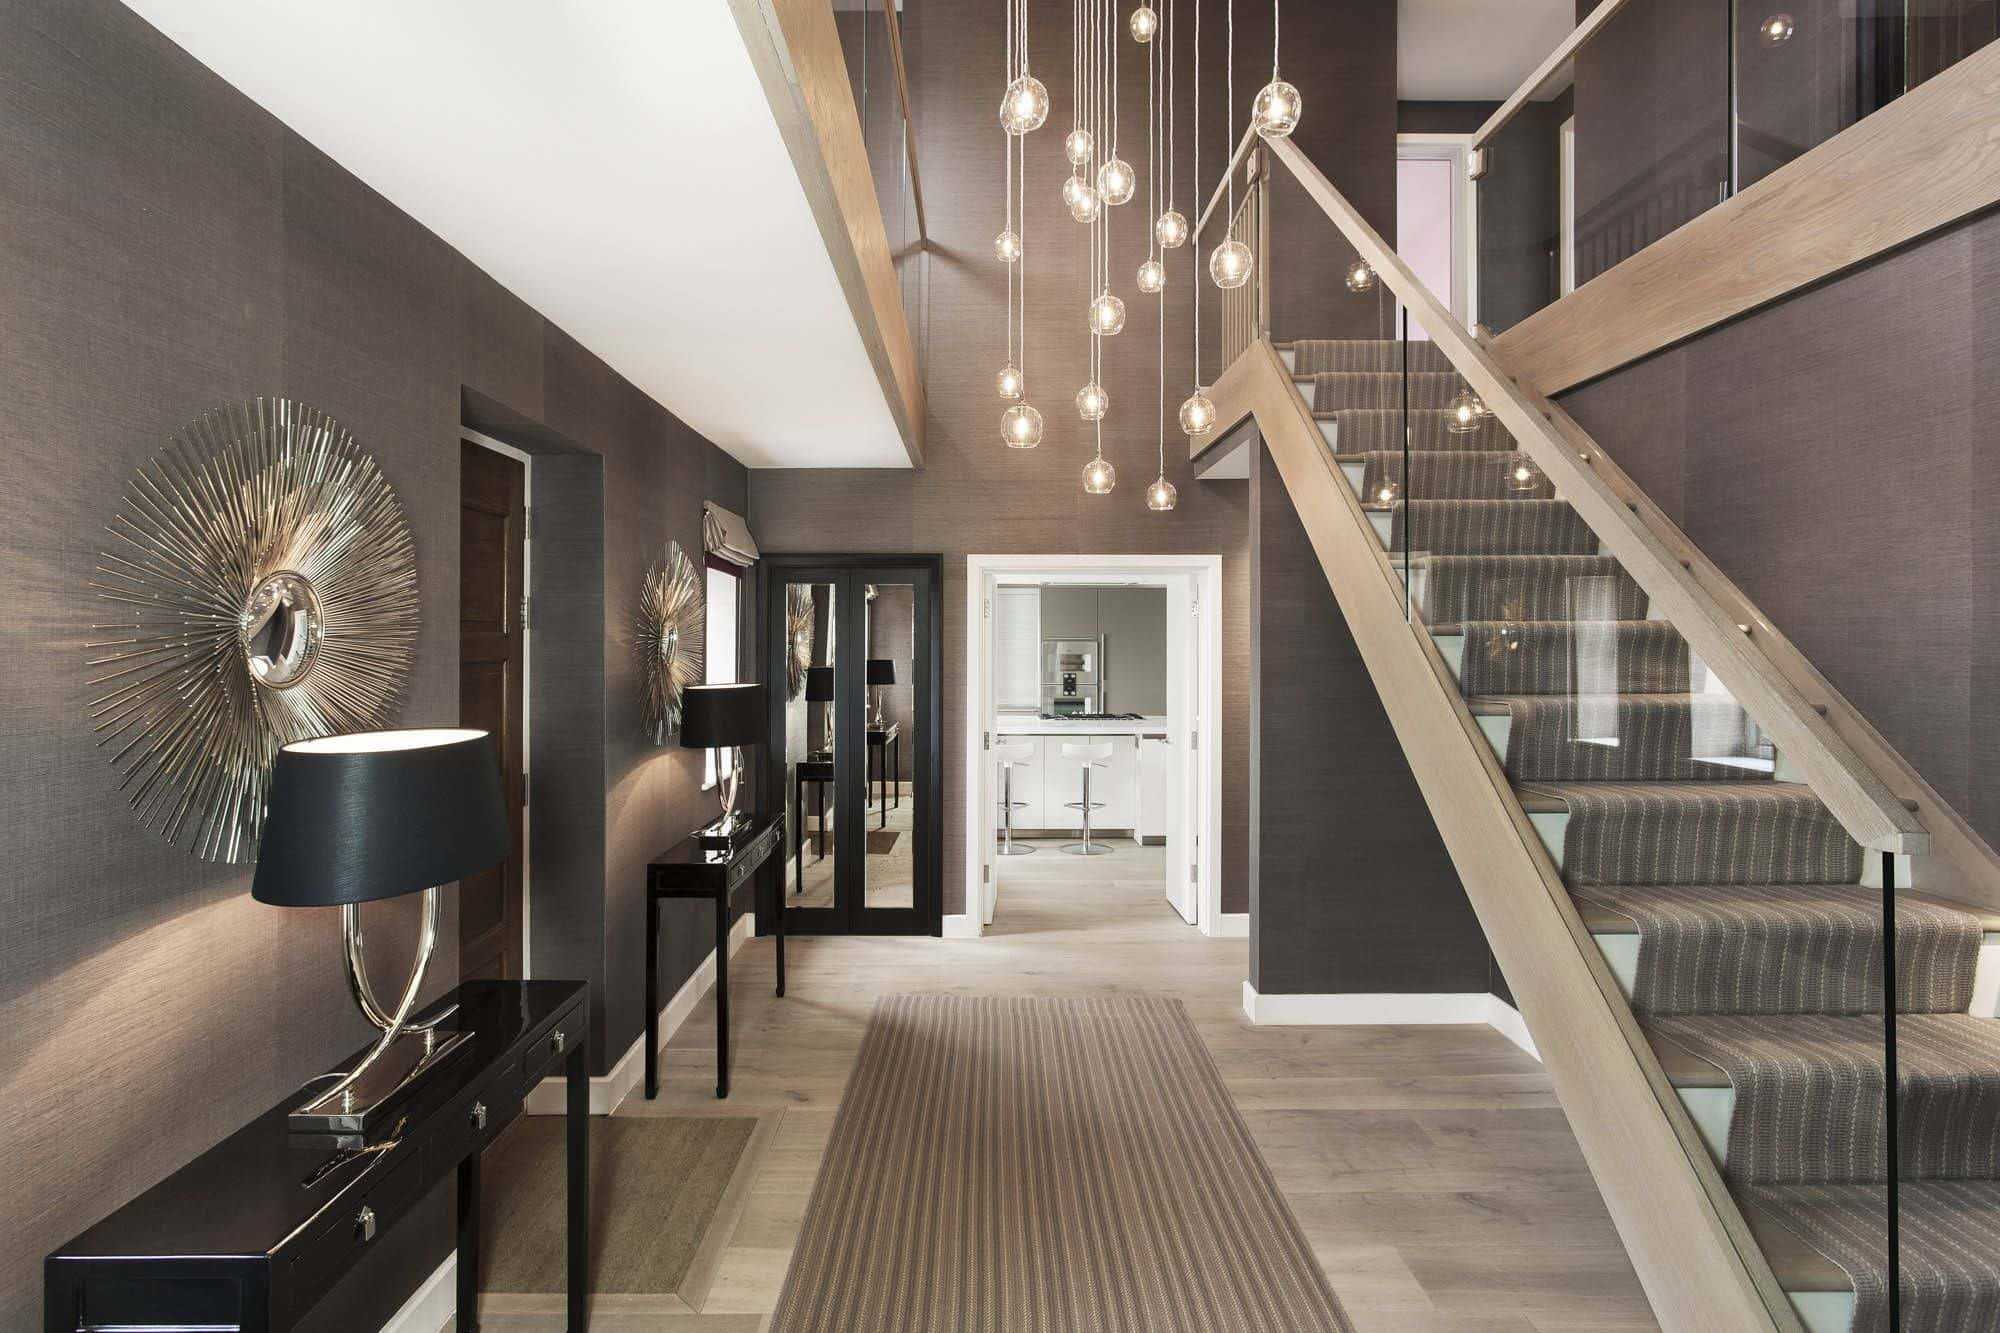 Прихожая с лестницей на второй этаж в частном доме фото коридора Самые инновационные дизайнерские решения по оформлению лестниц в 2019 году Популярная цветовая гамма